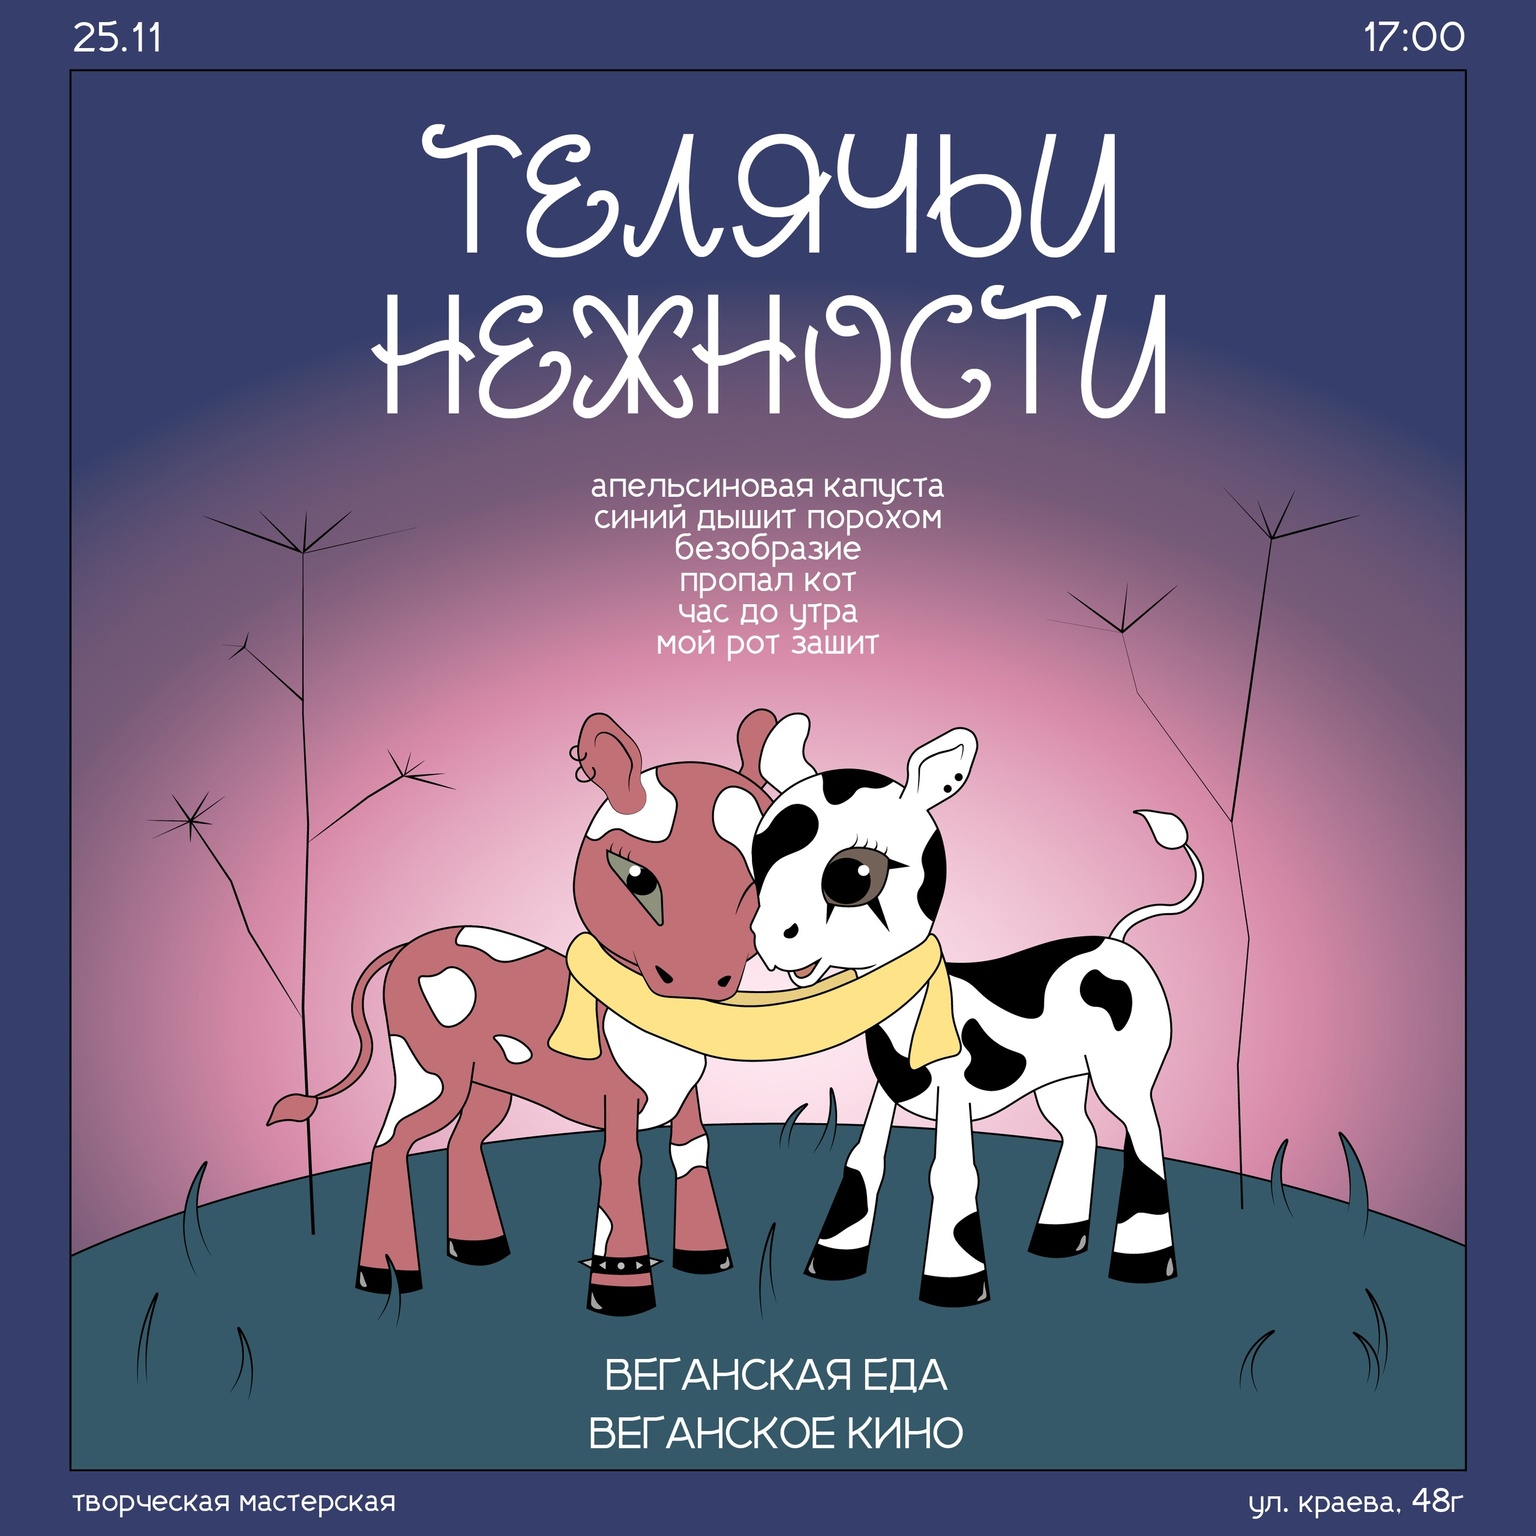 Афиша Ижевска — Музыкальный вечер «Телячьи нежности»